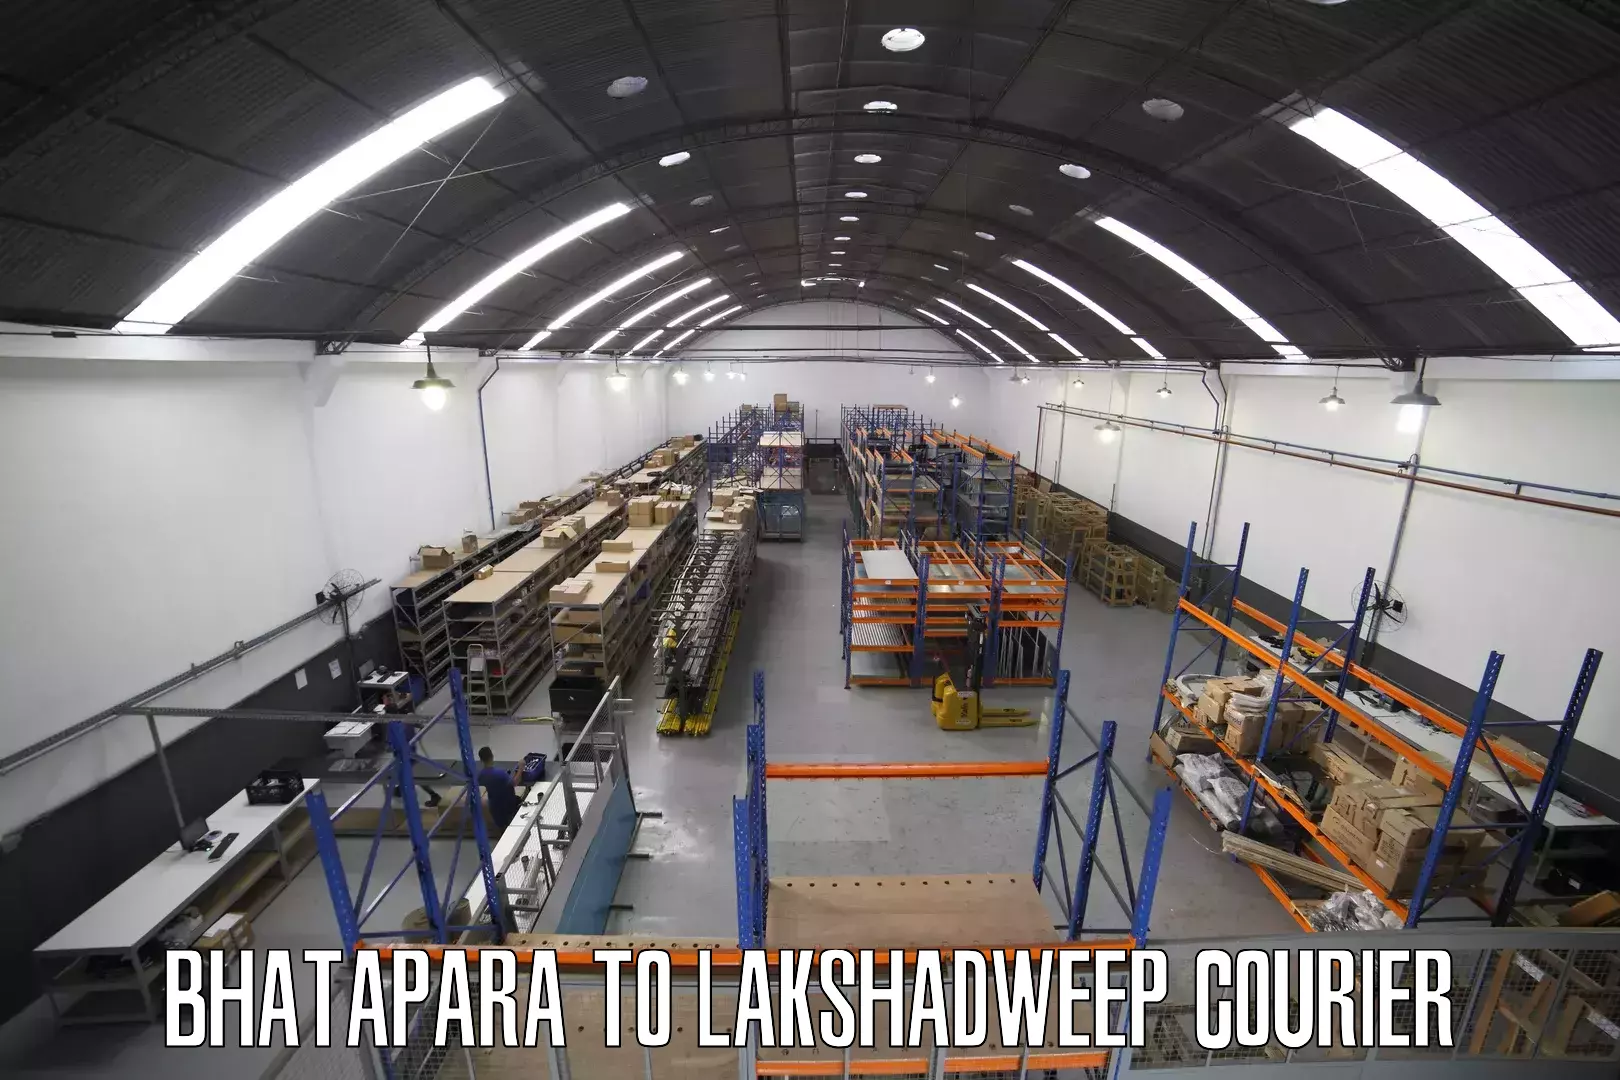 24/7 shipping services Bhatapara to Lakshadweep